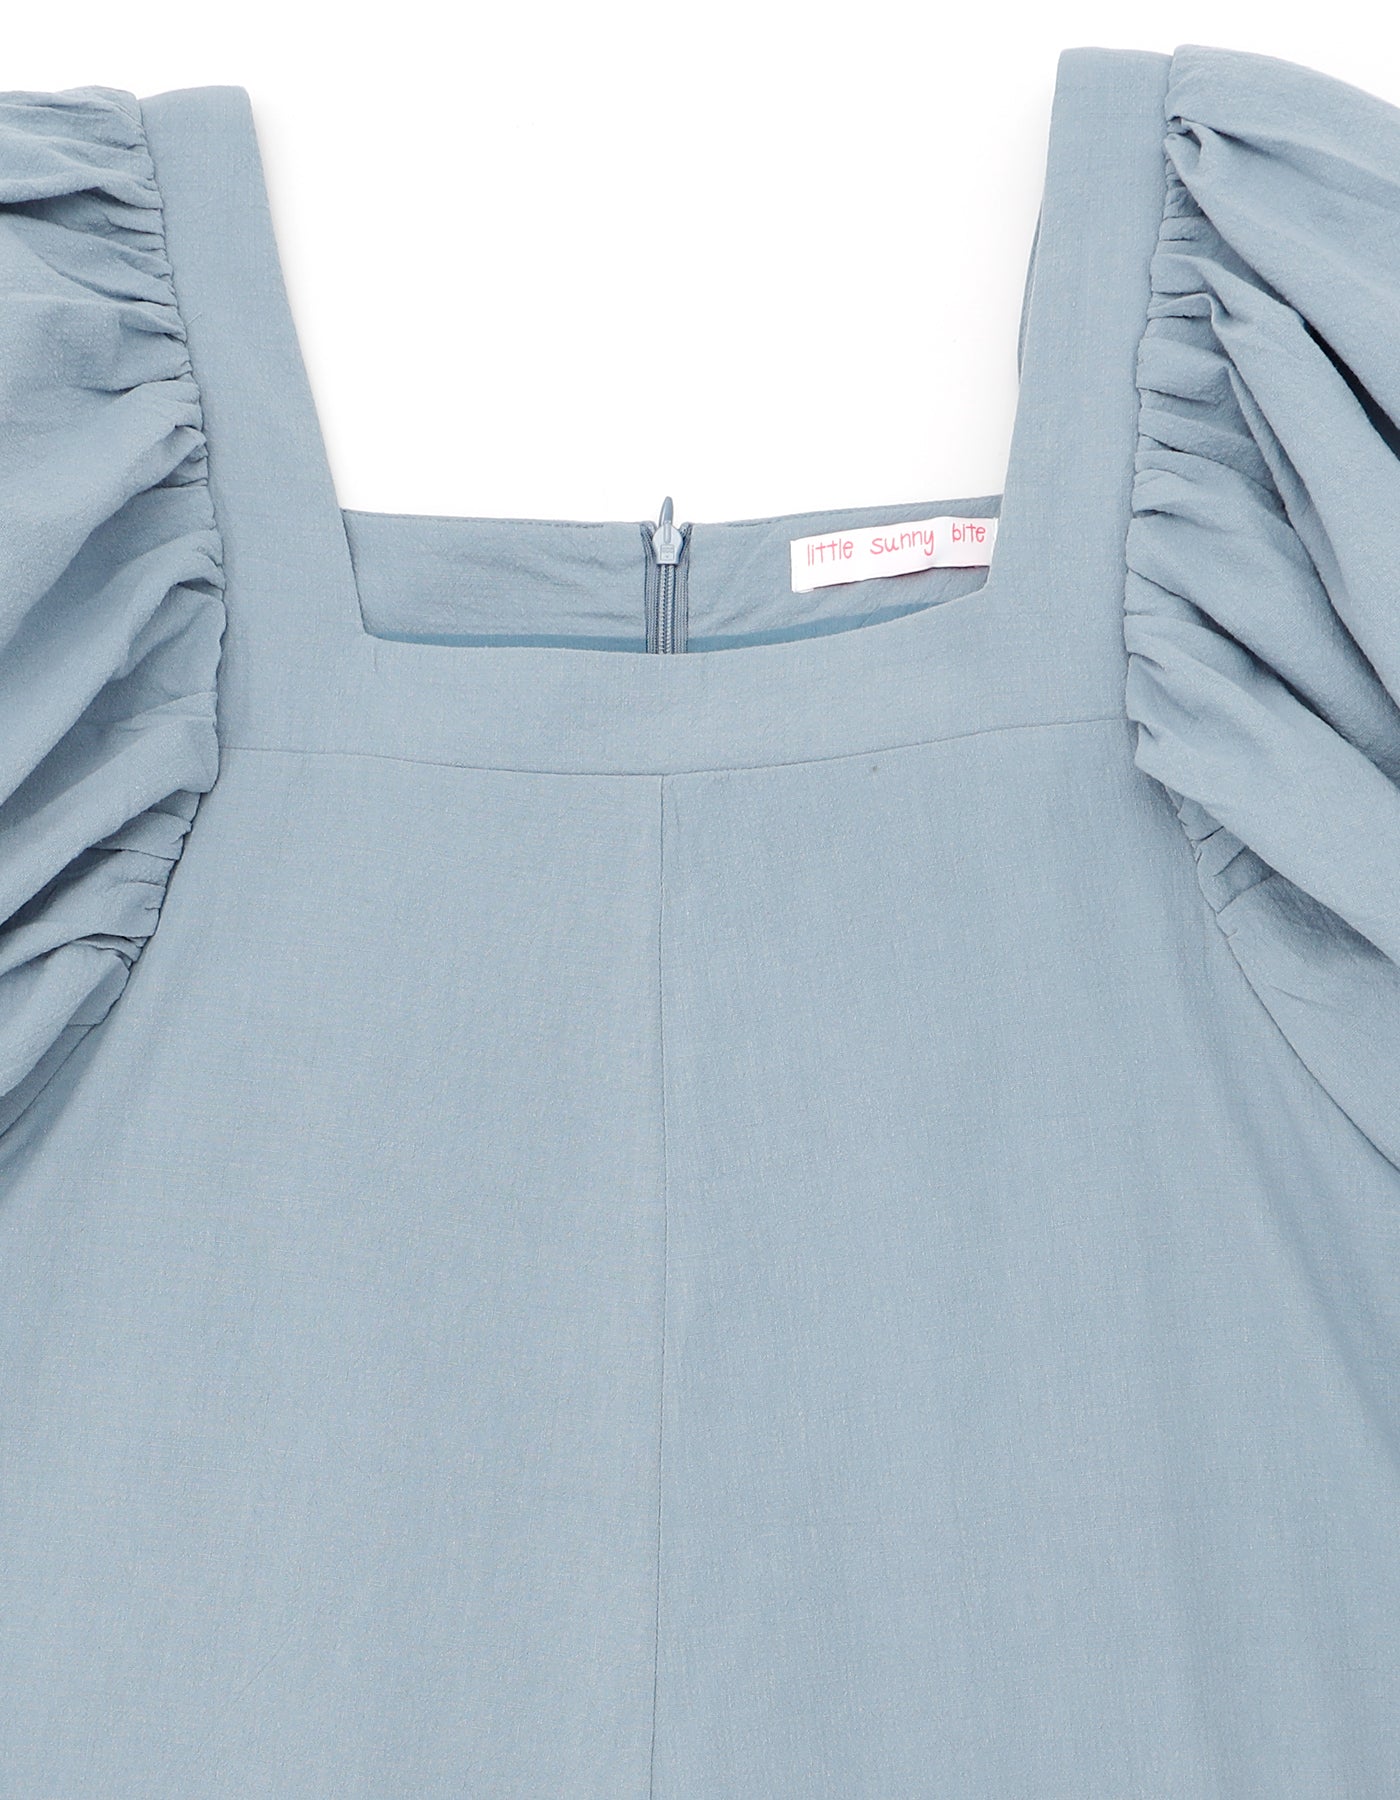 puff sleeve long dress  / BLUE